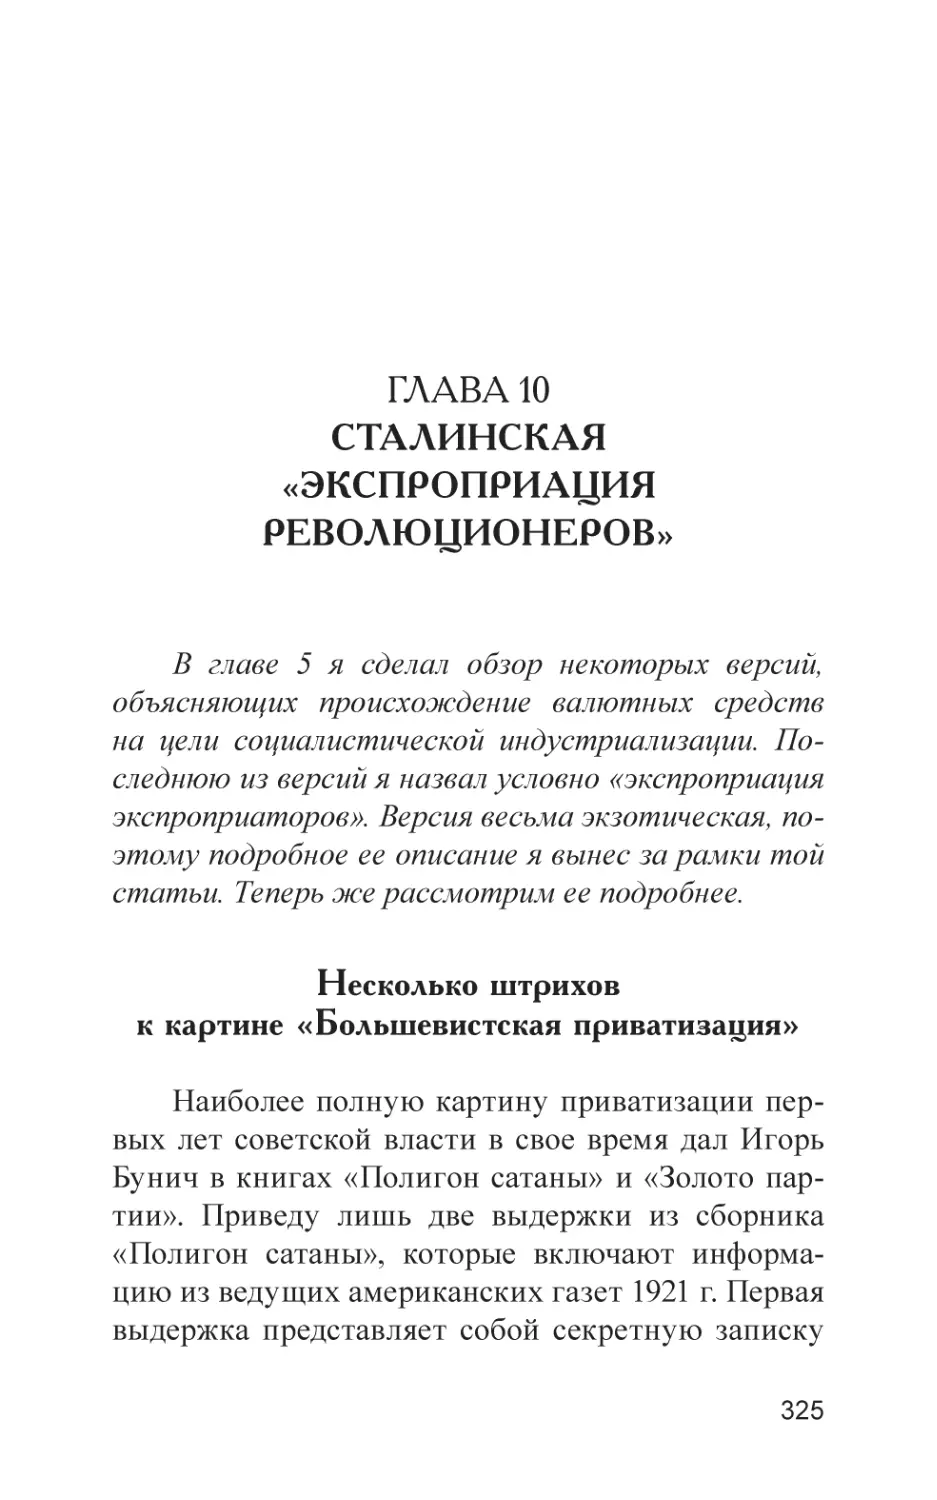 Глава 10. Сталинская «экспроприация революционеров»
Несколько штрихов к картине «Большевистская приватизация»